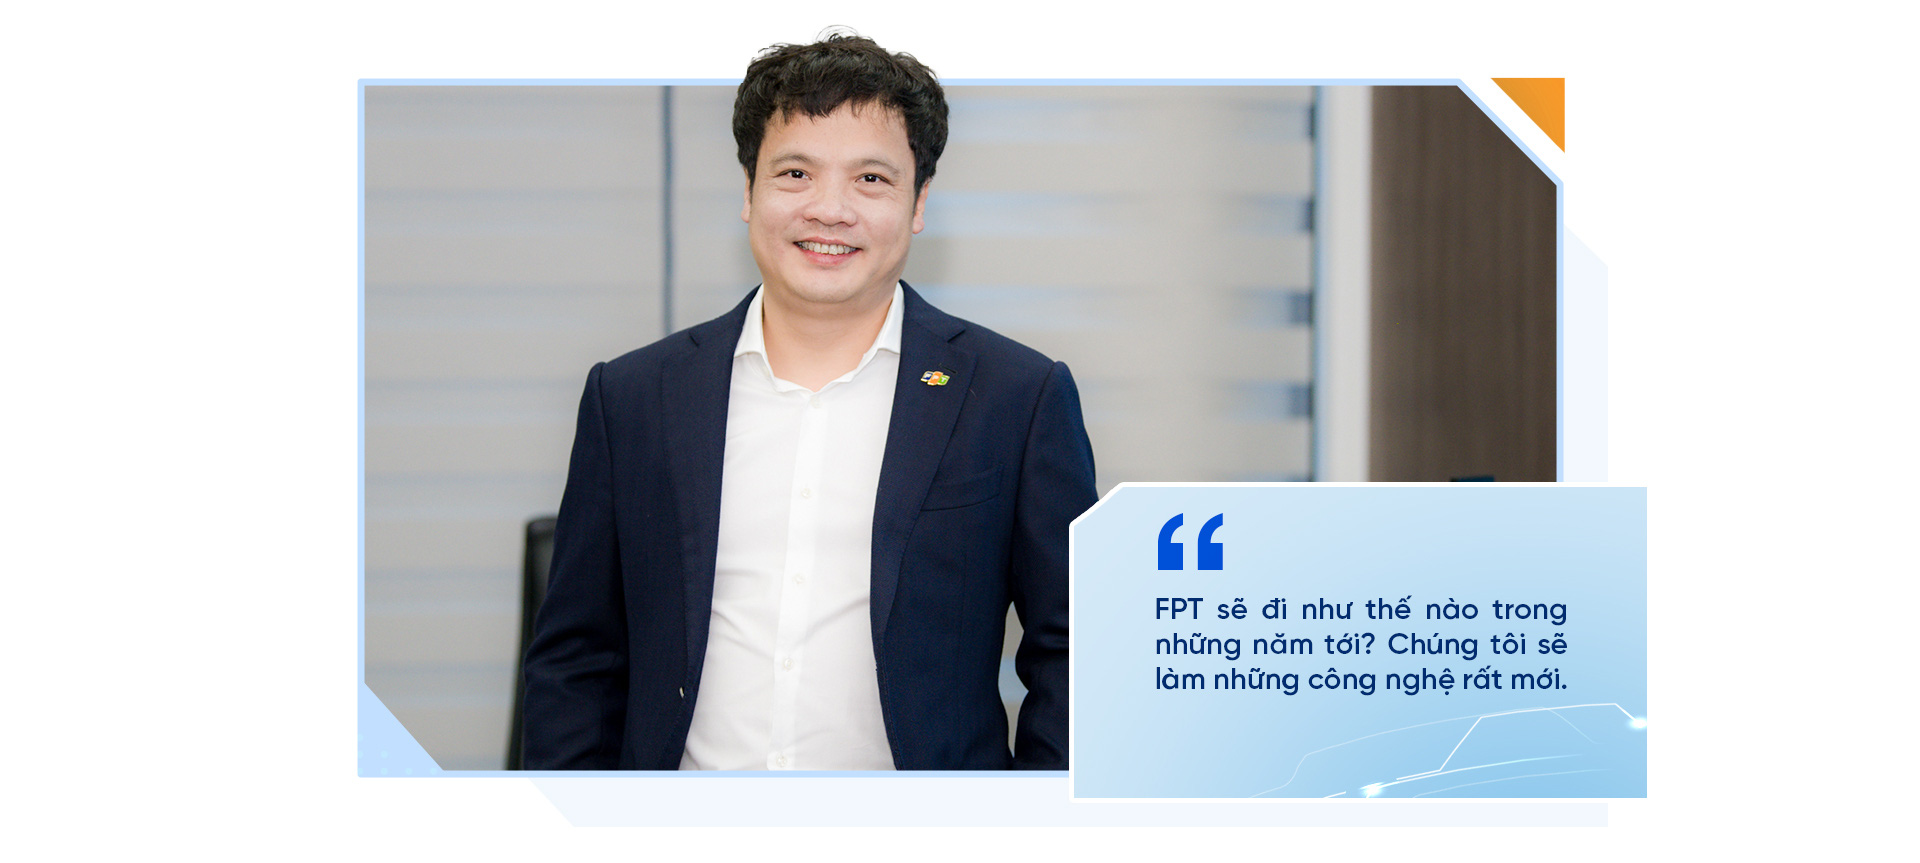 CEO FPT Nguyễn Văn Khoa: Thành công của FPT có rất ít từ sự may mắn - Ảnh 15.